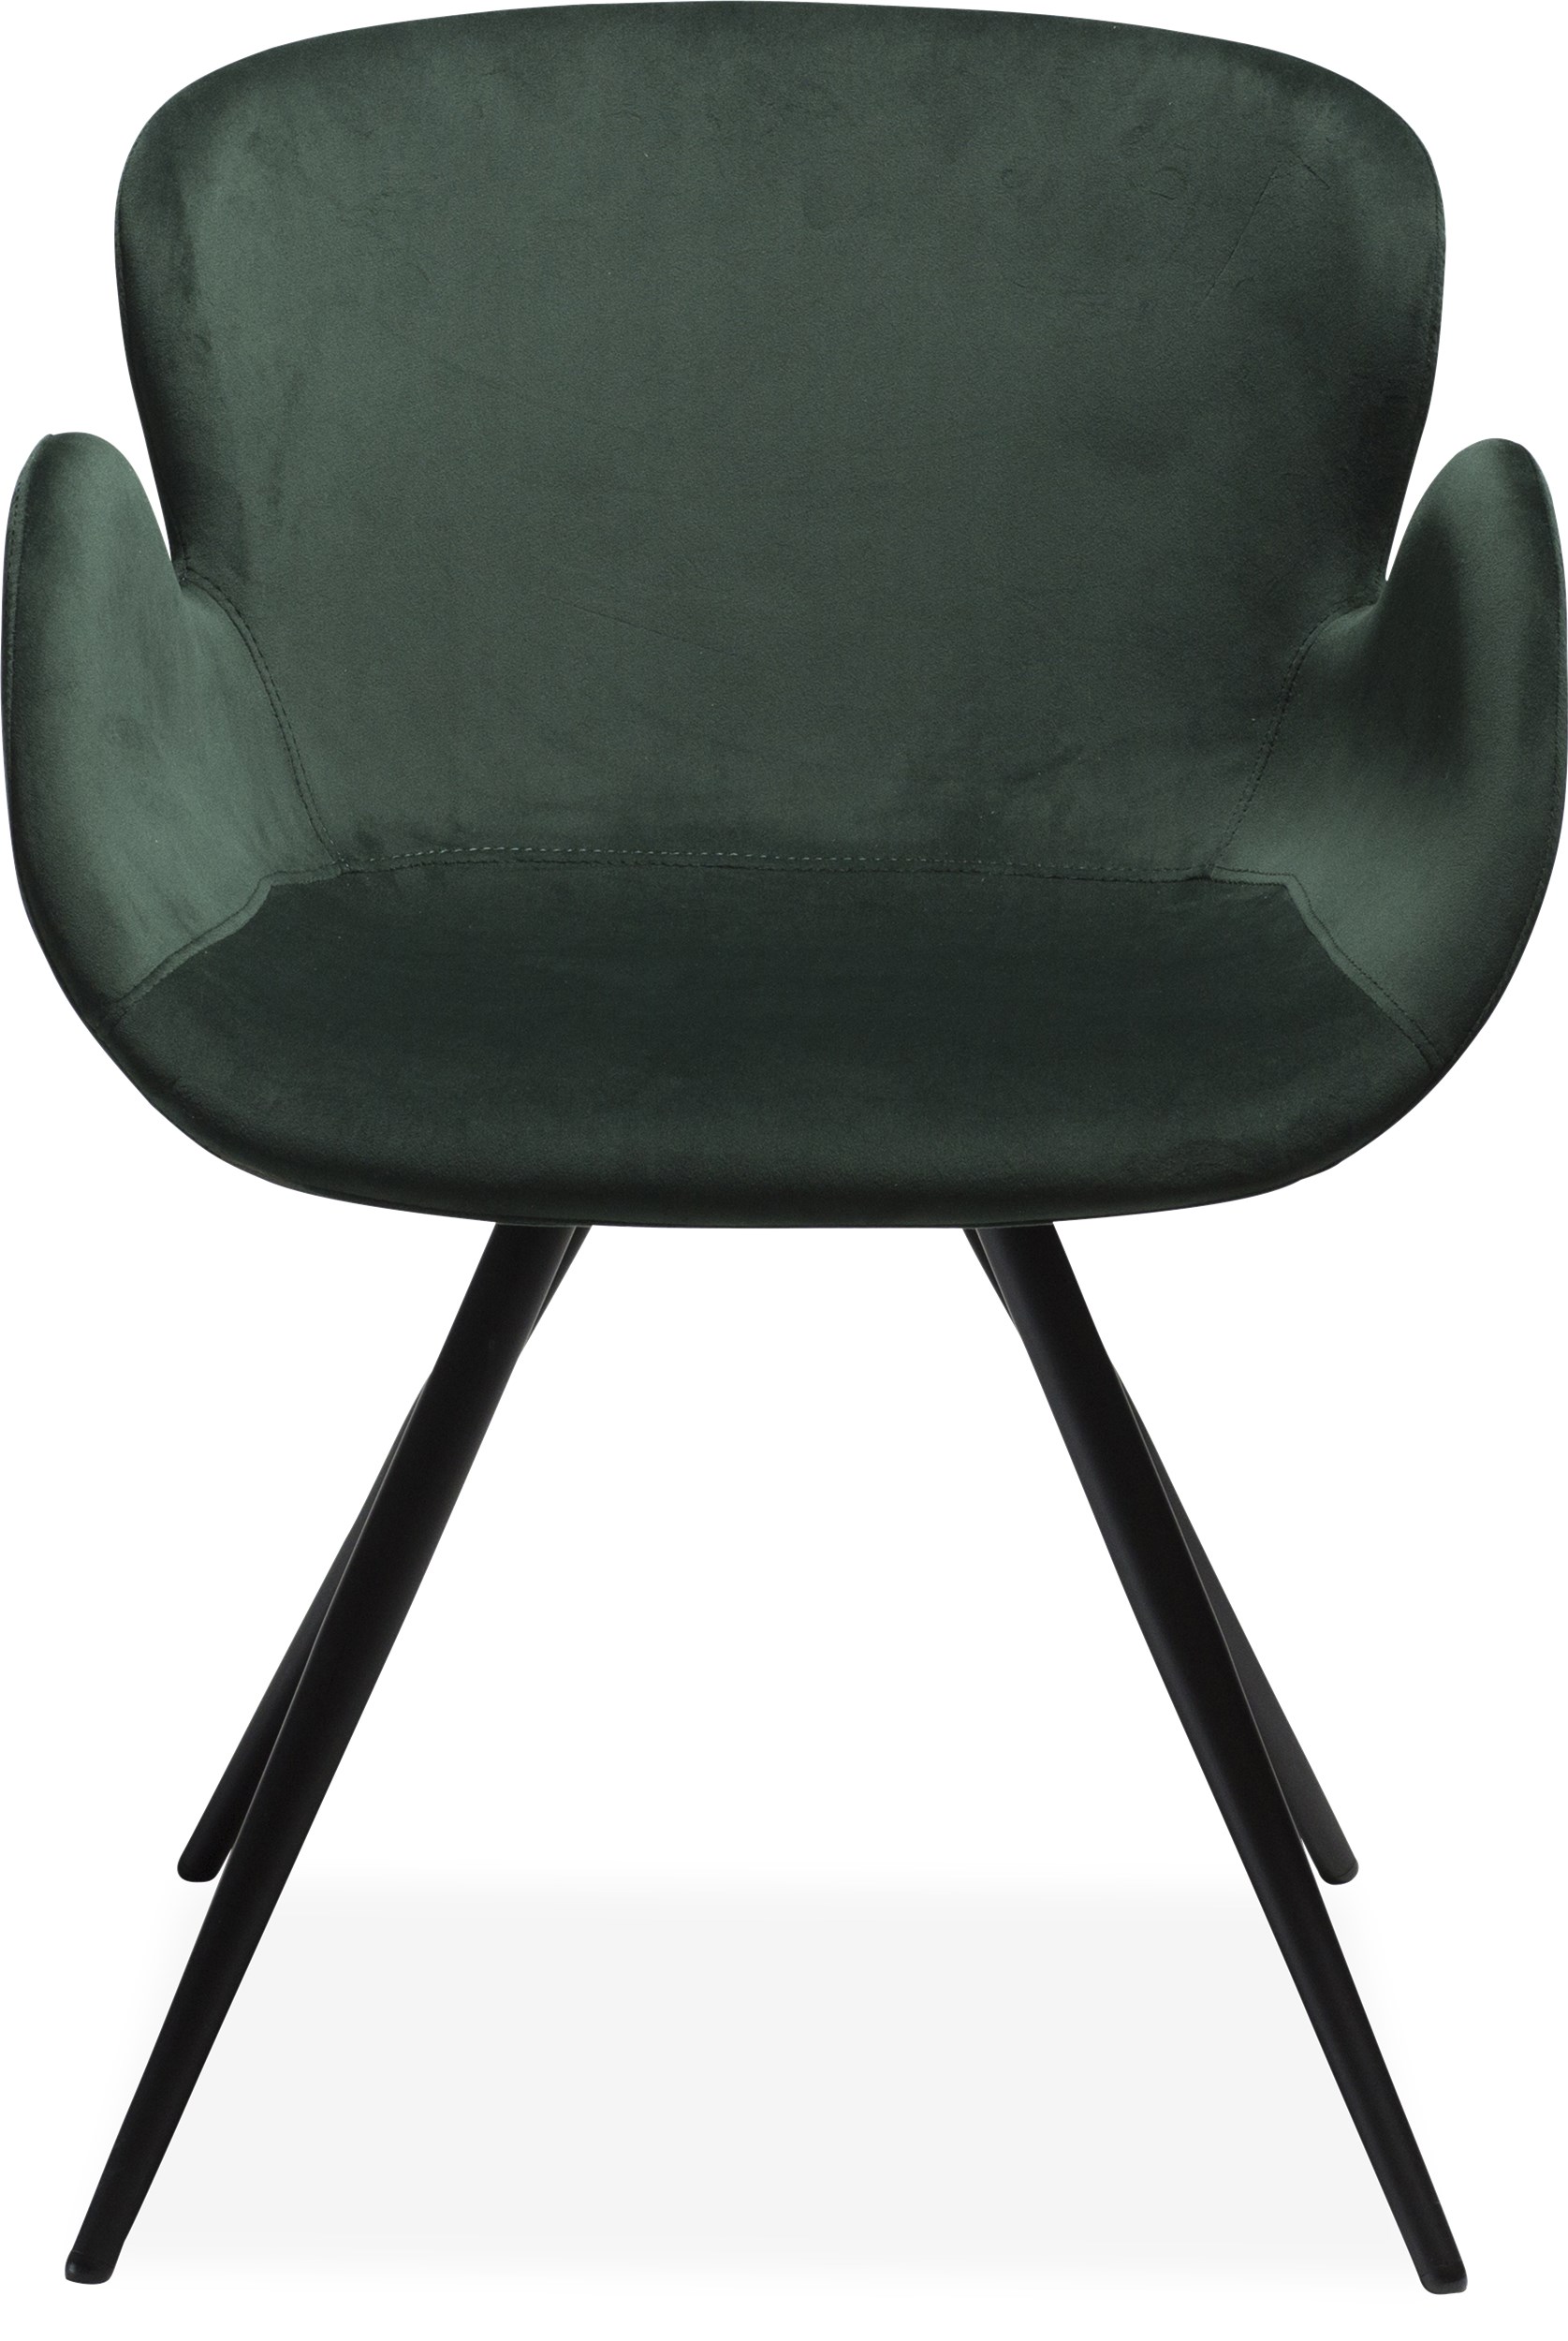 Deia matstol - Sits i emeraldgrönt sammetstyg och ben i svartlackerad metall